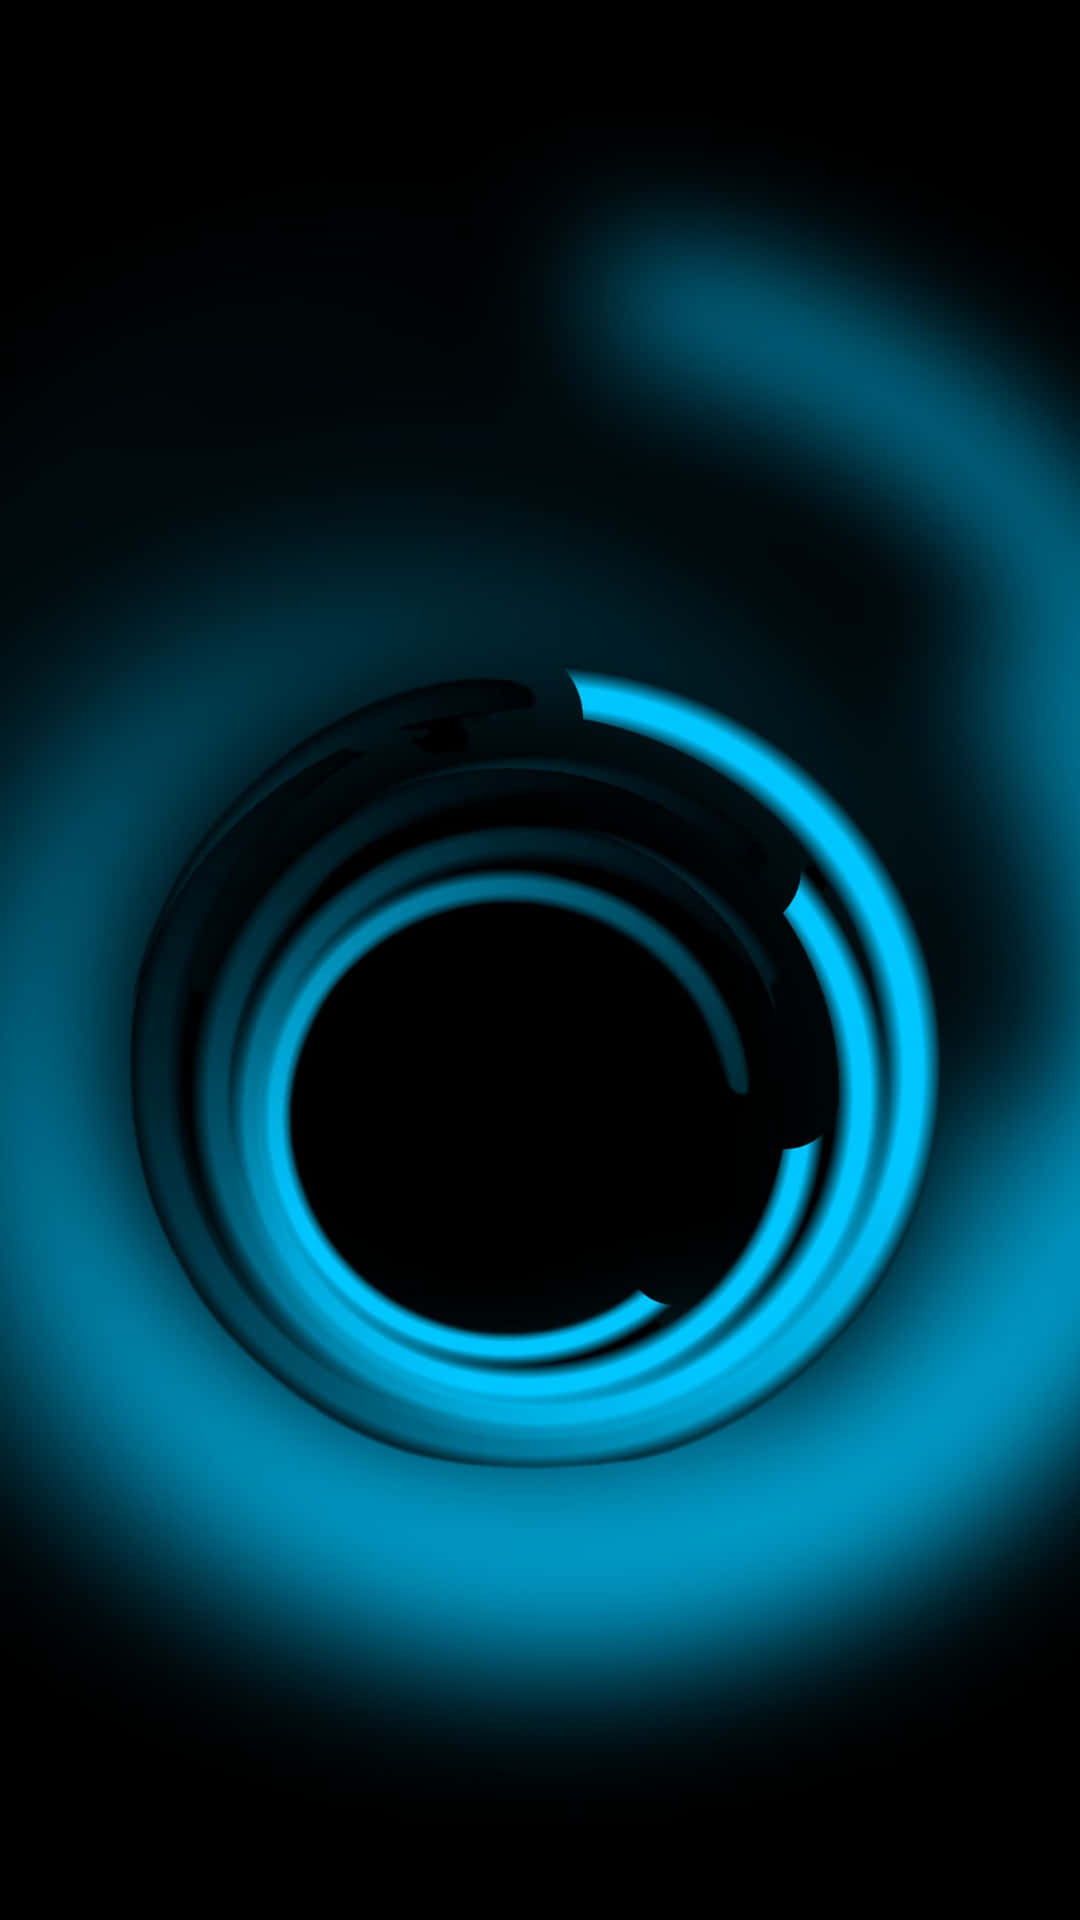 Enblå Cirkel Med En Blå Ljus I Den